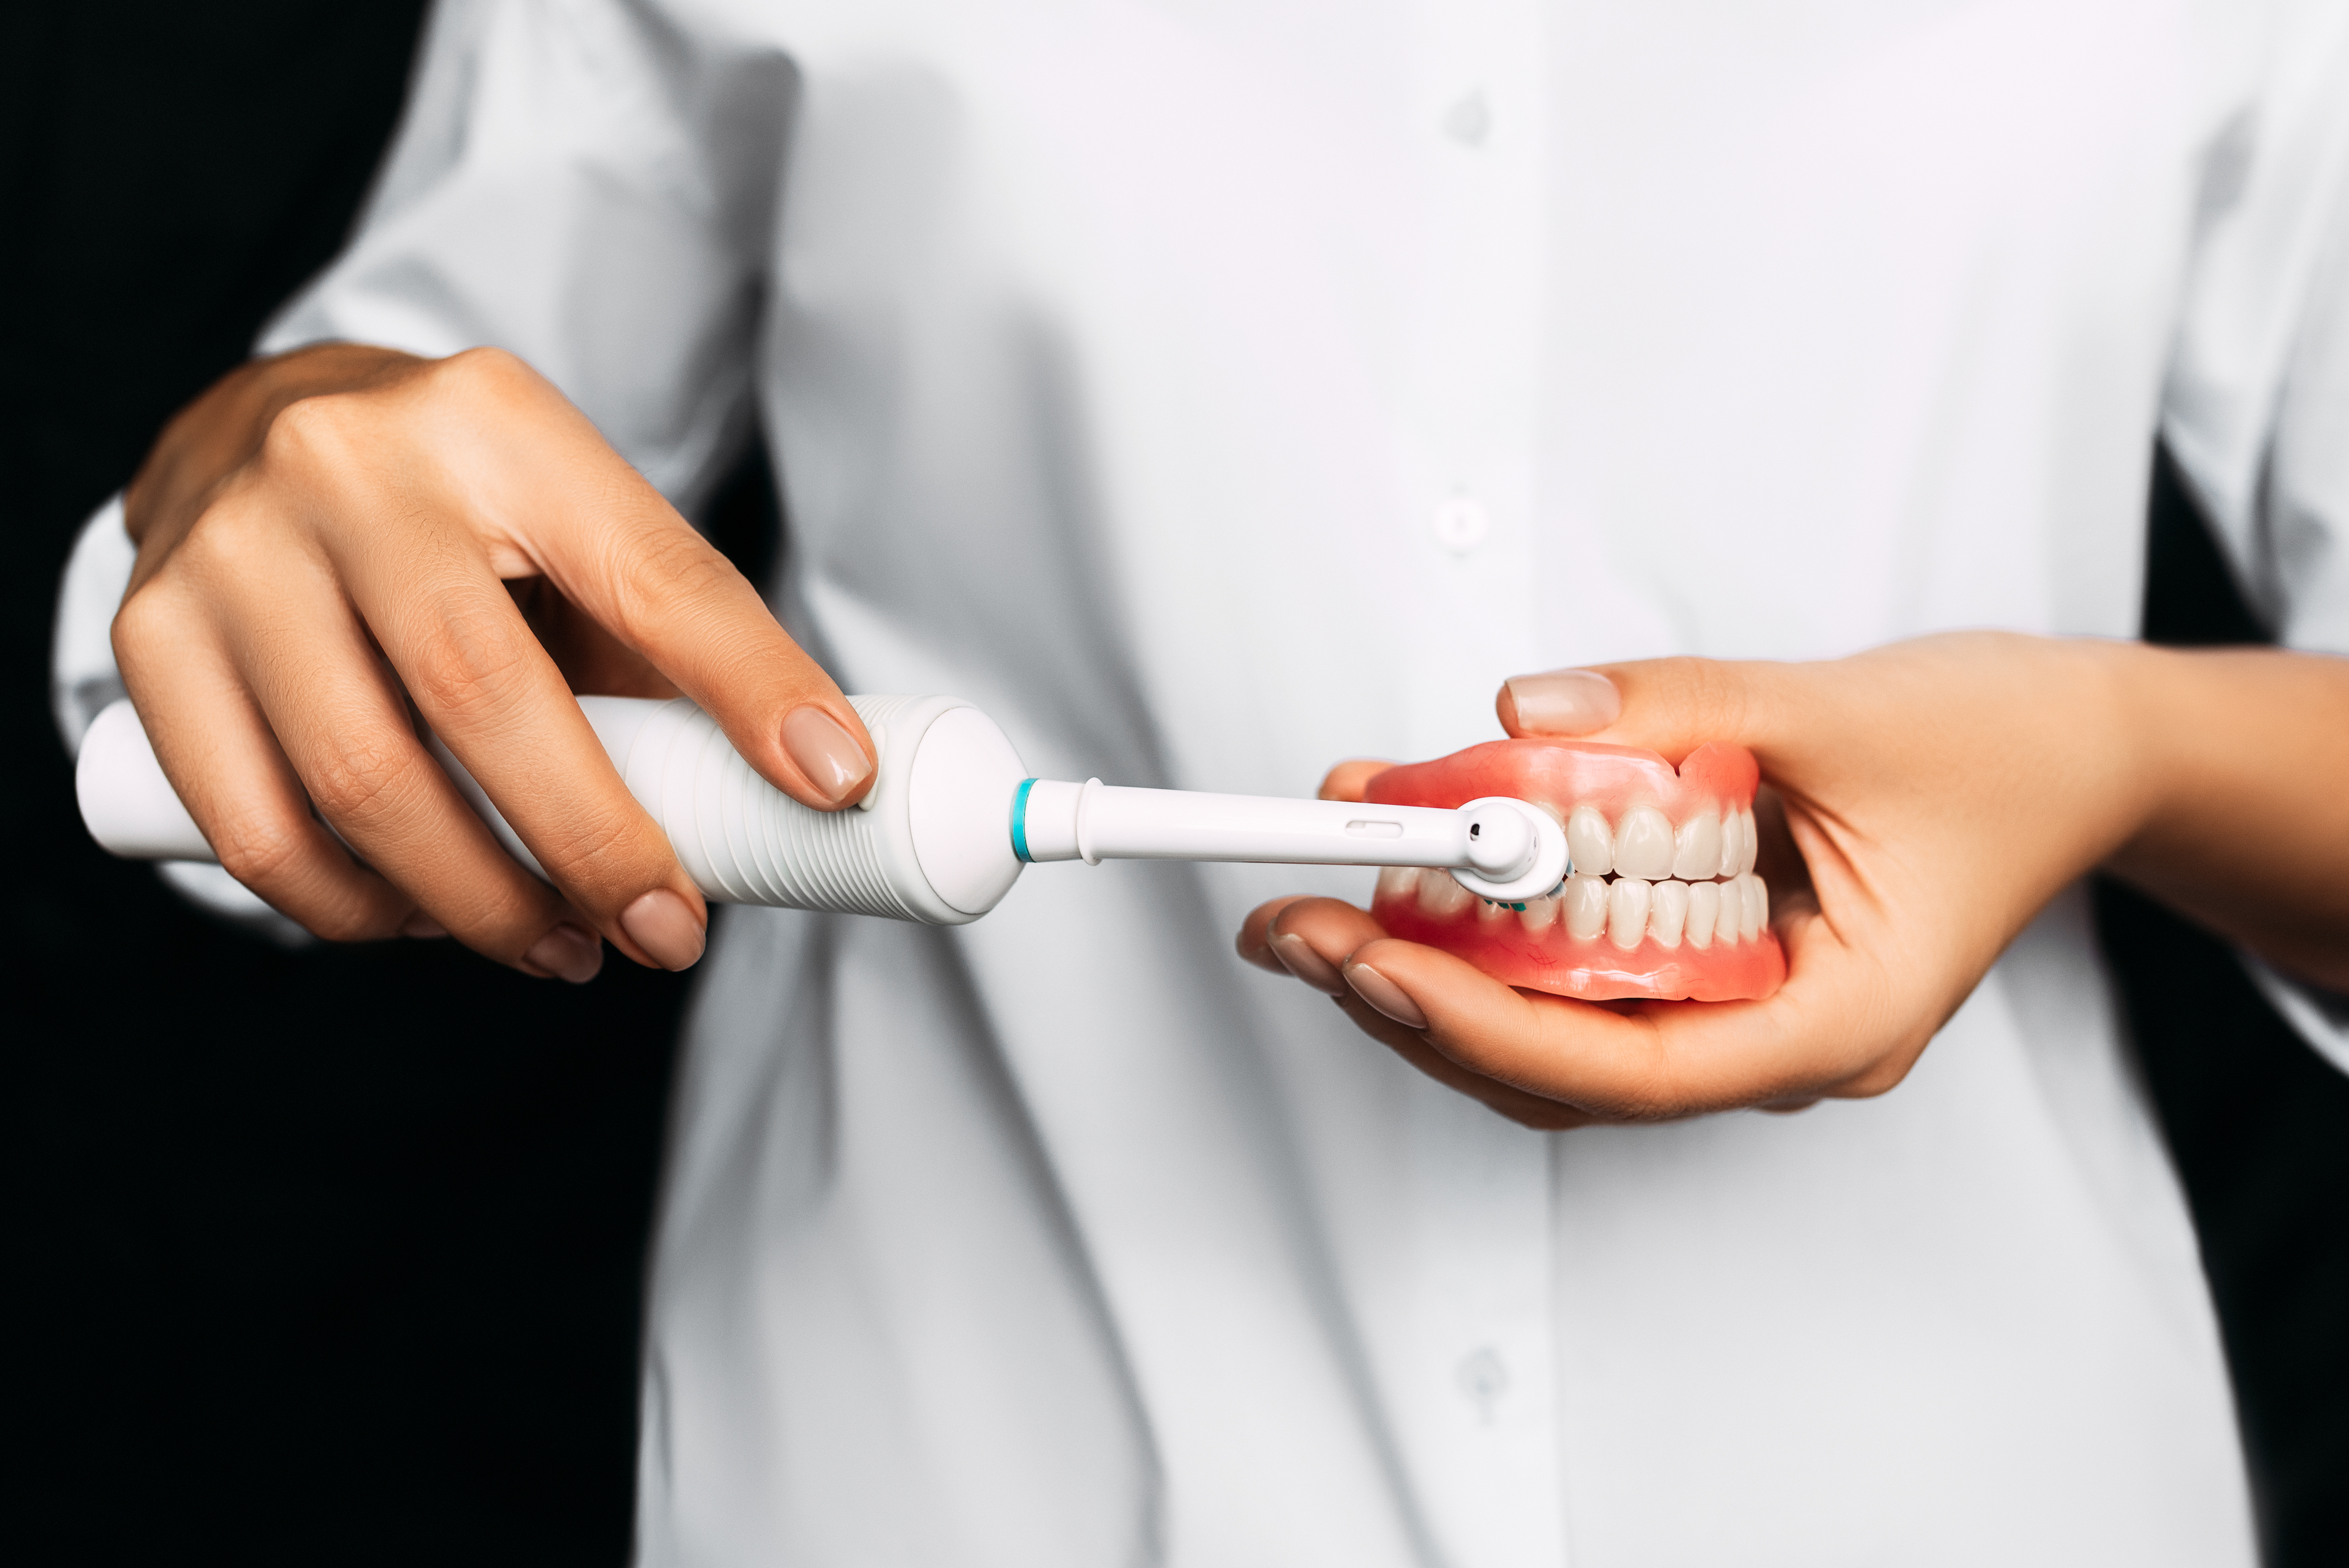 Az elektromos és intelligens fogkefék különösen ajánlottak, mert alaposabb tisztítást tesznek lehetővé. (Forrás: Envato Elements)